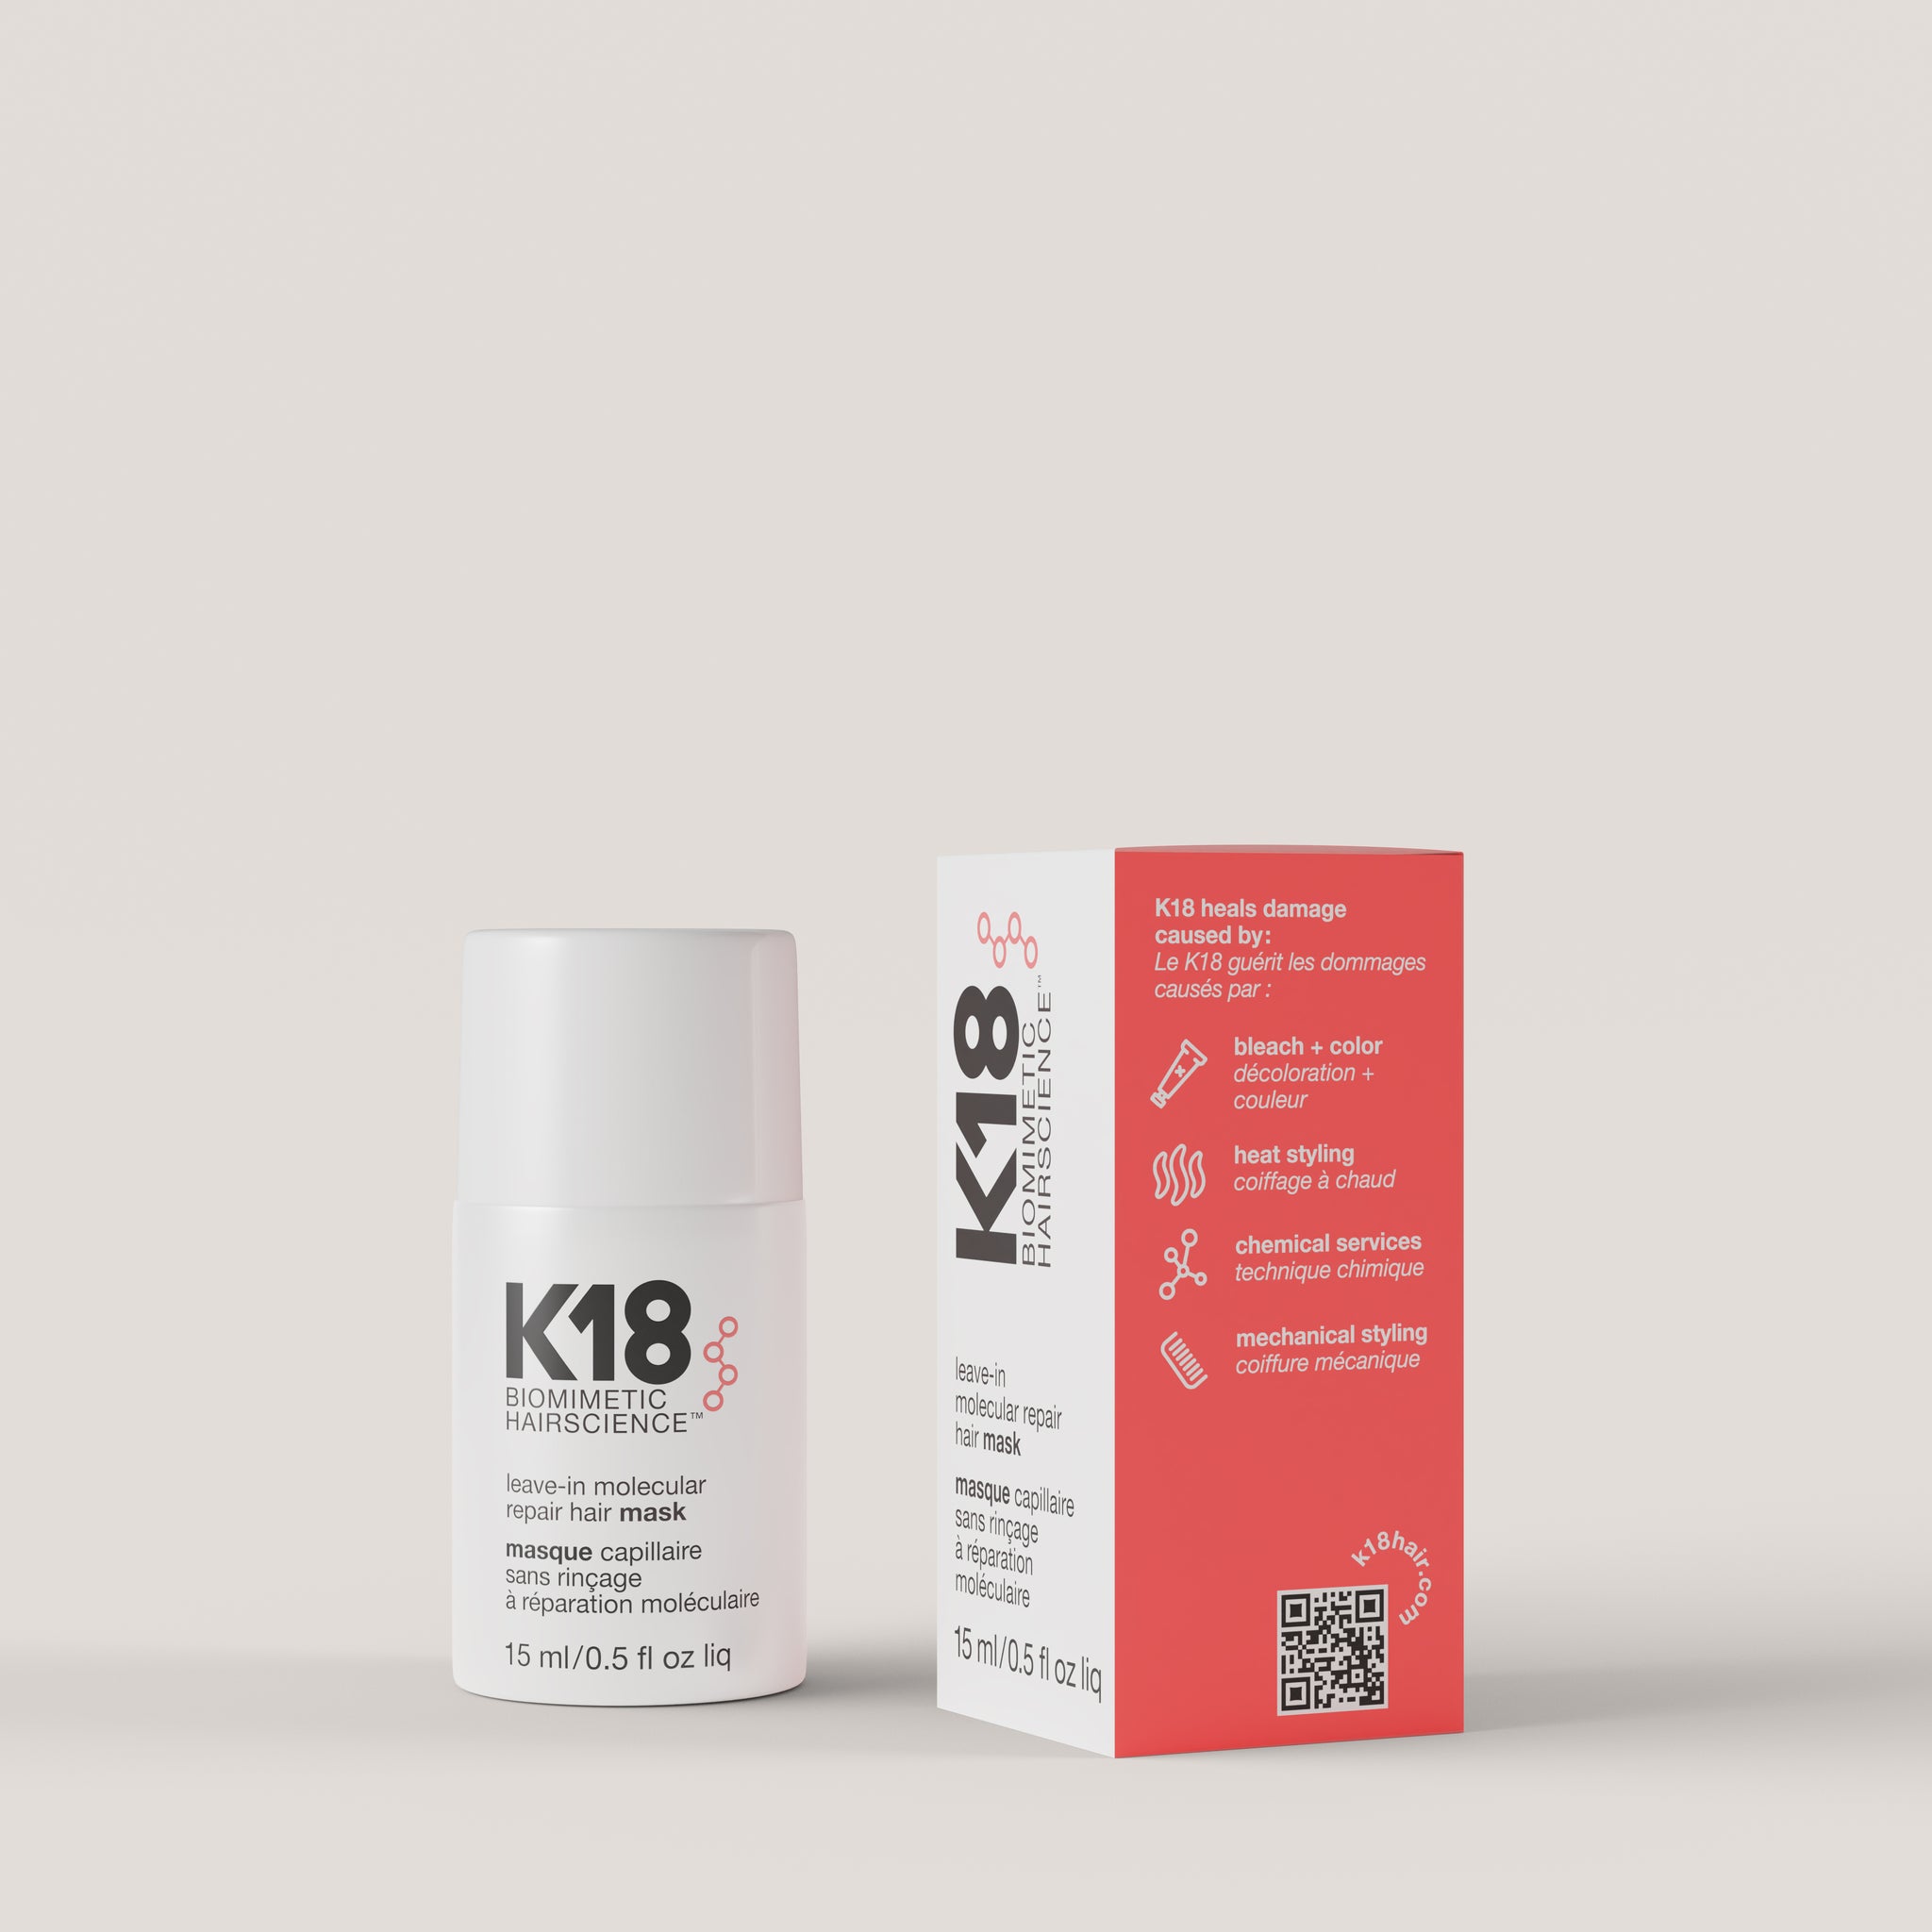 K18 Masque sans rinçage réparation moléculaire 50ml